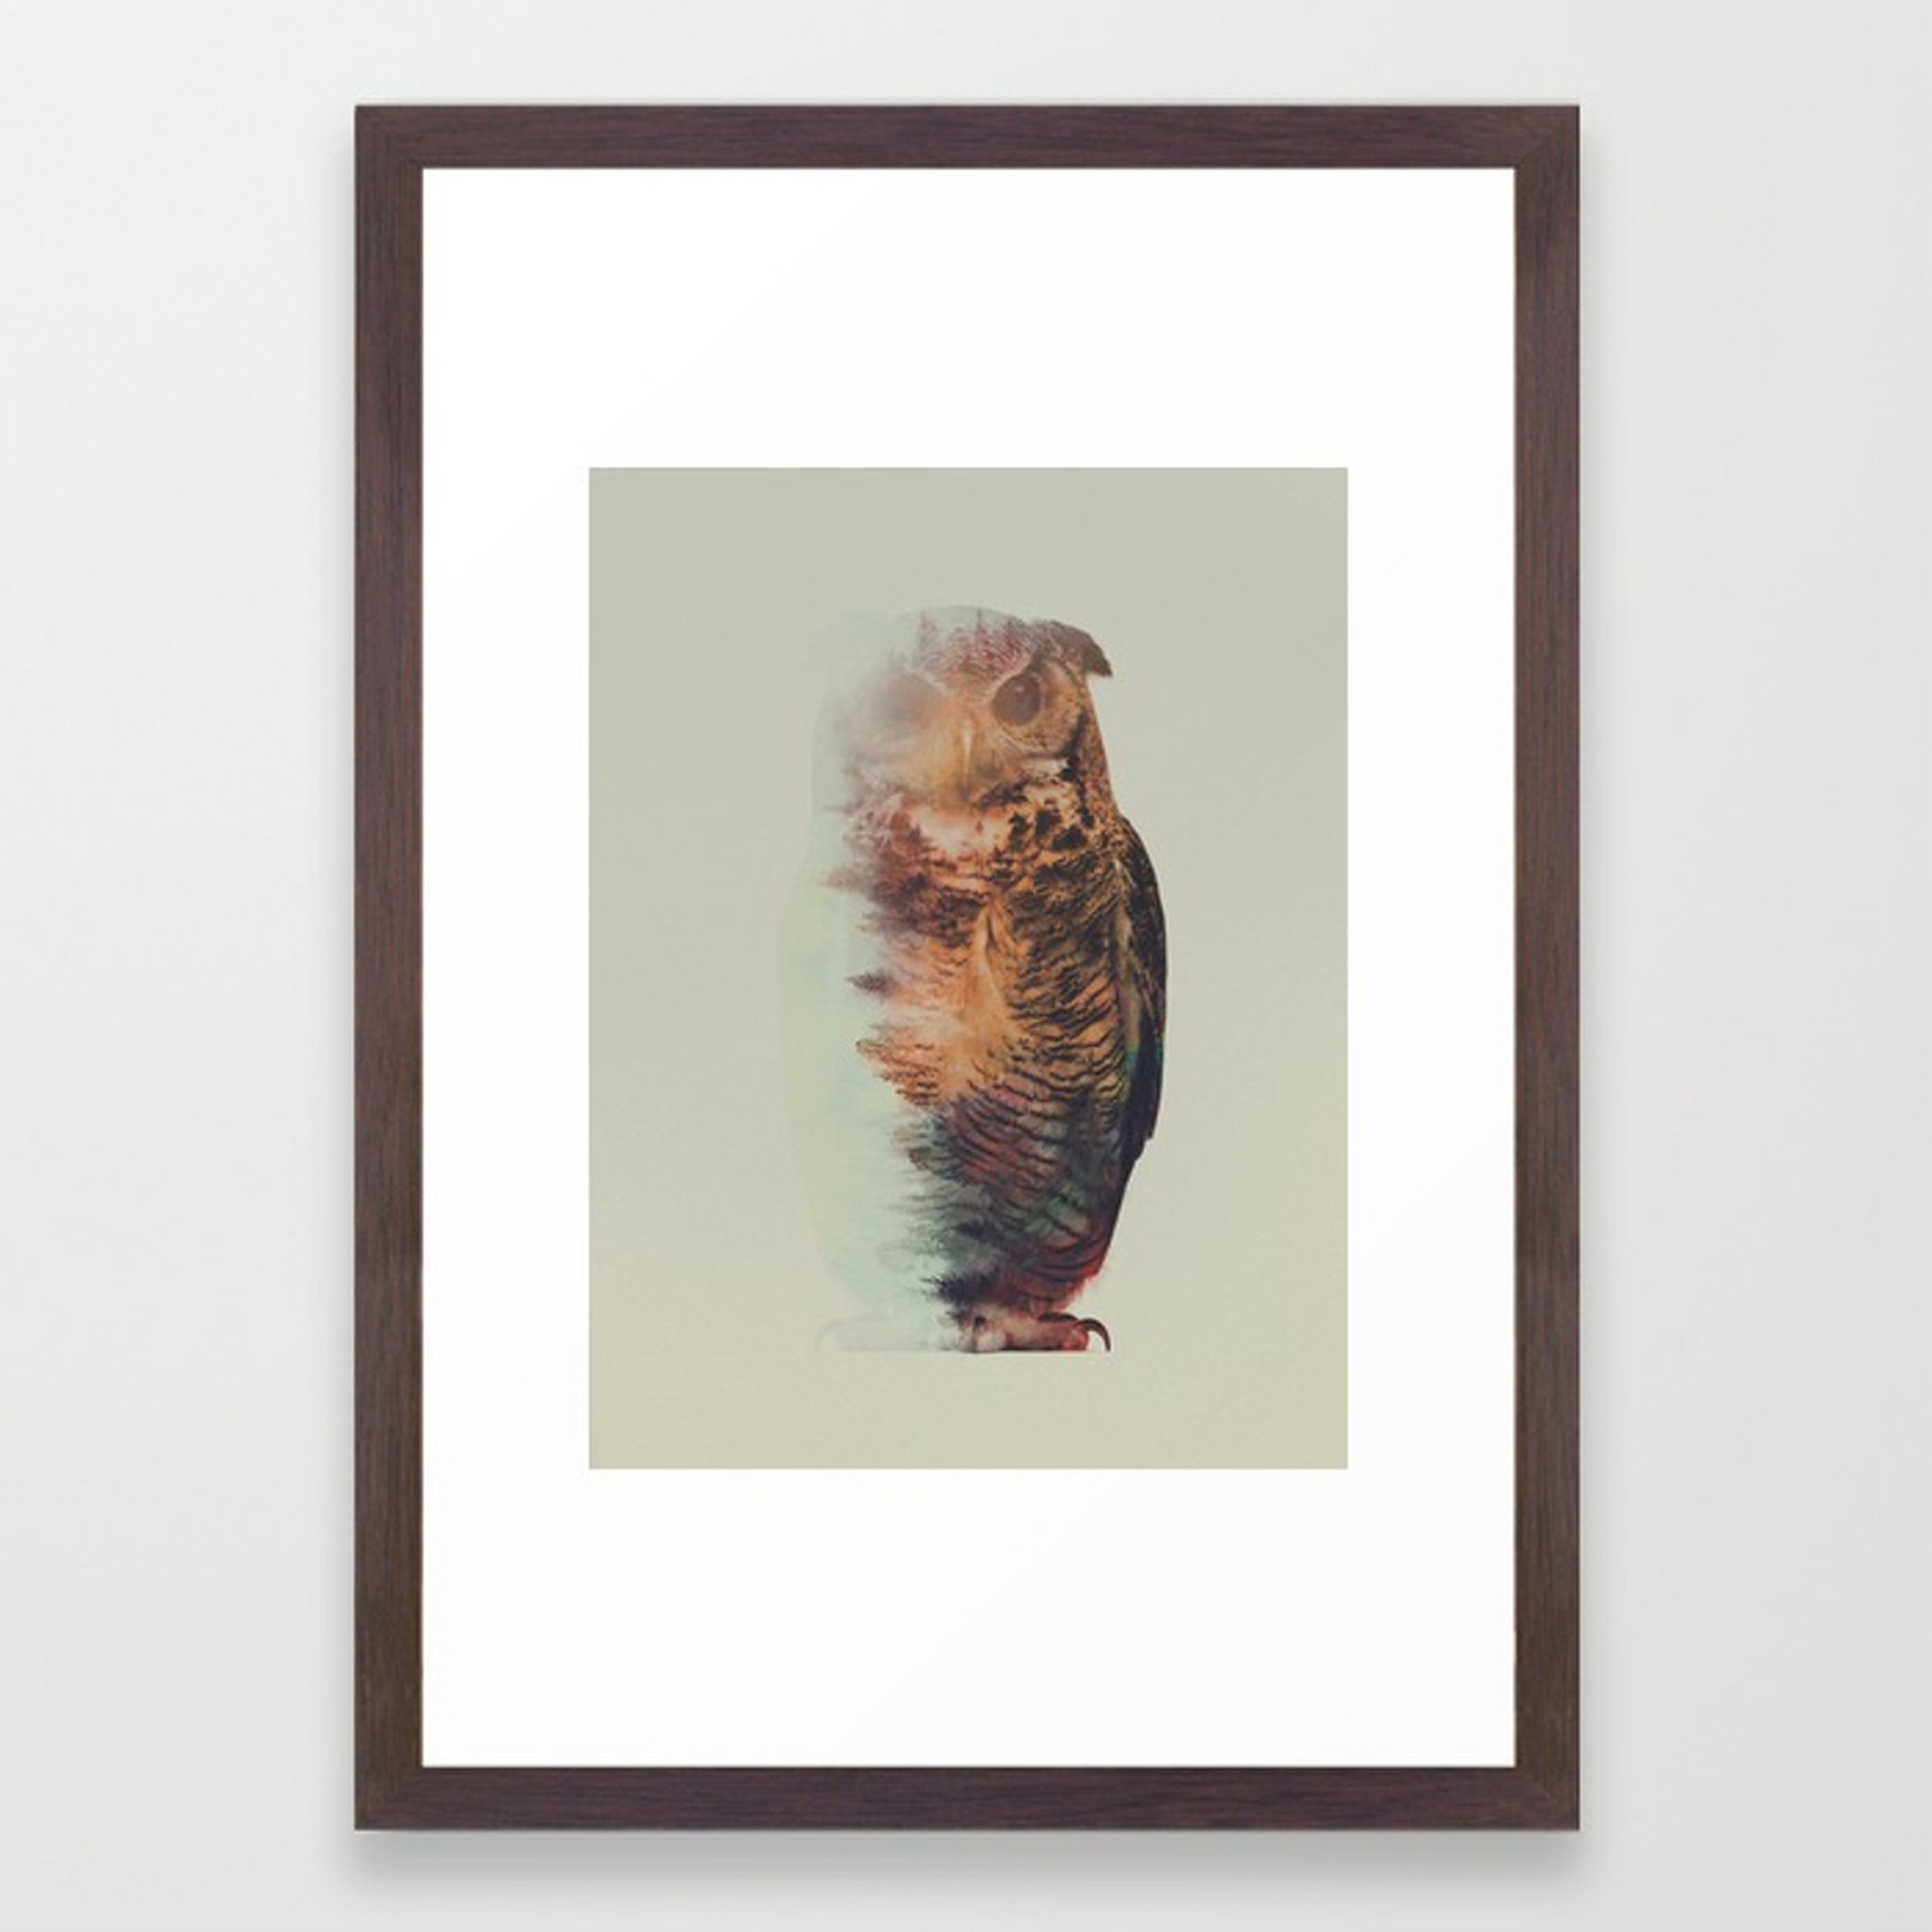 Norwegian Woods: The Owl Framed Art Print by Andreaslie - Society6